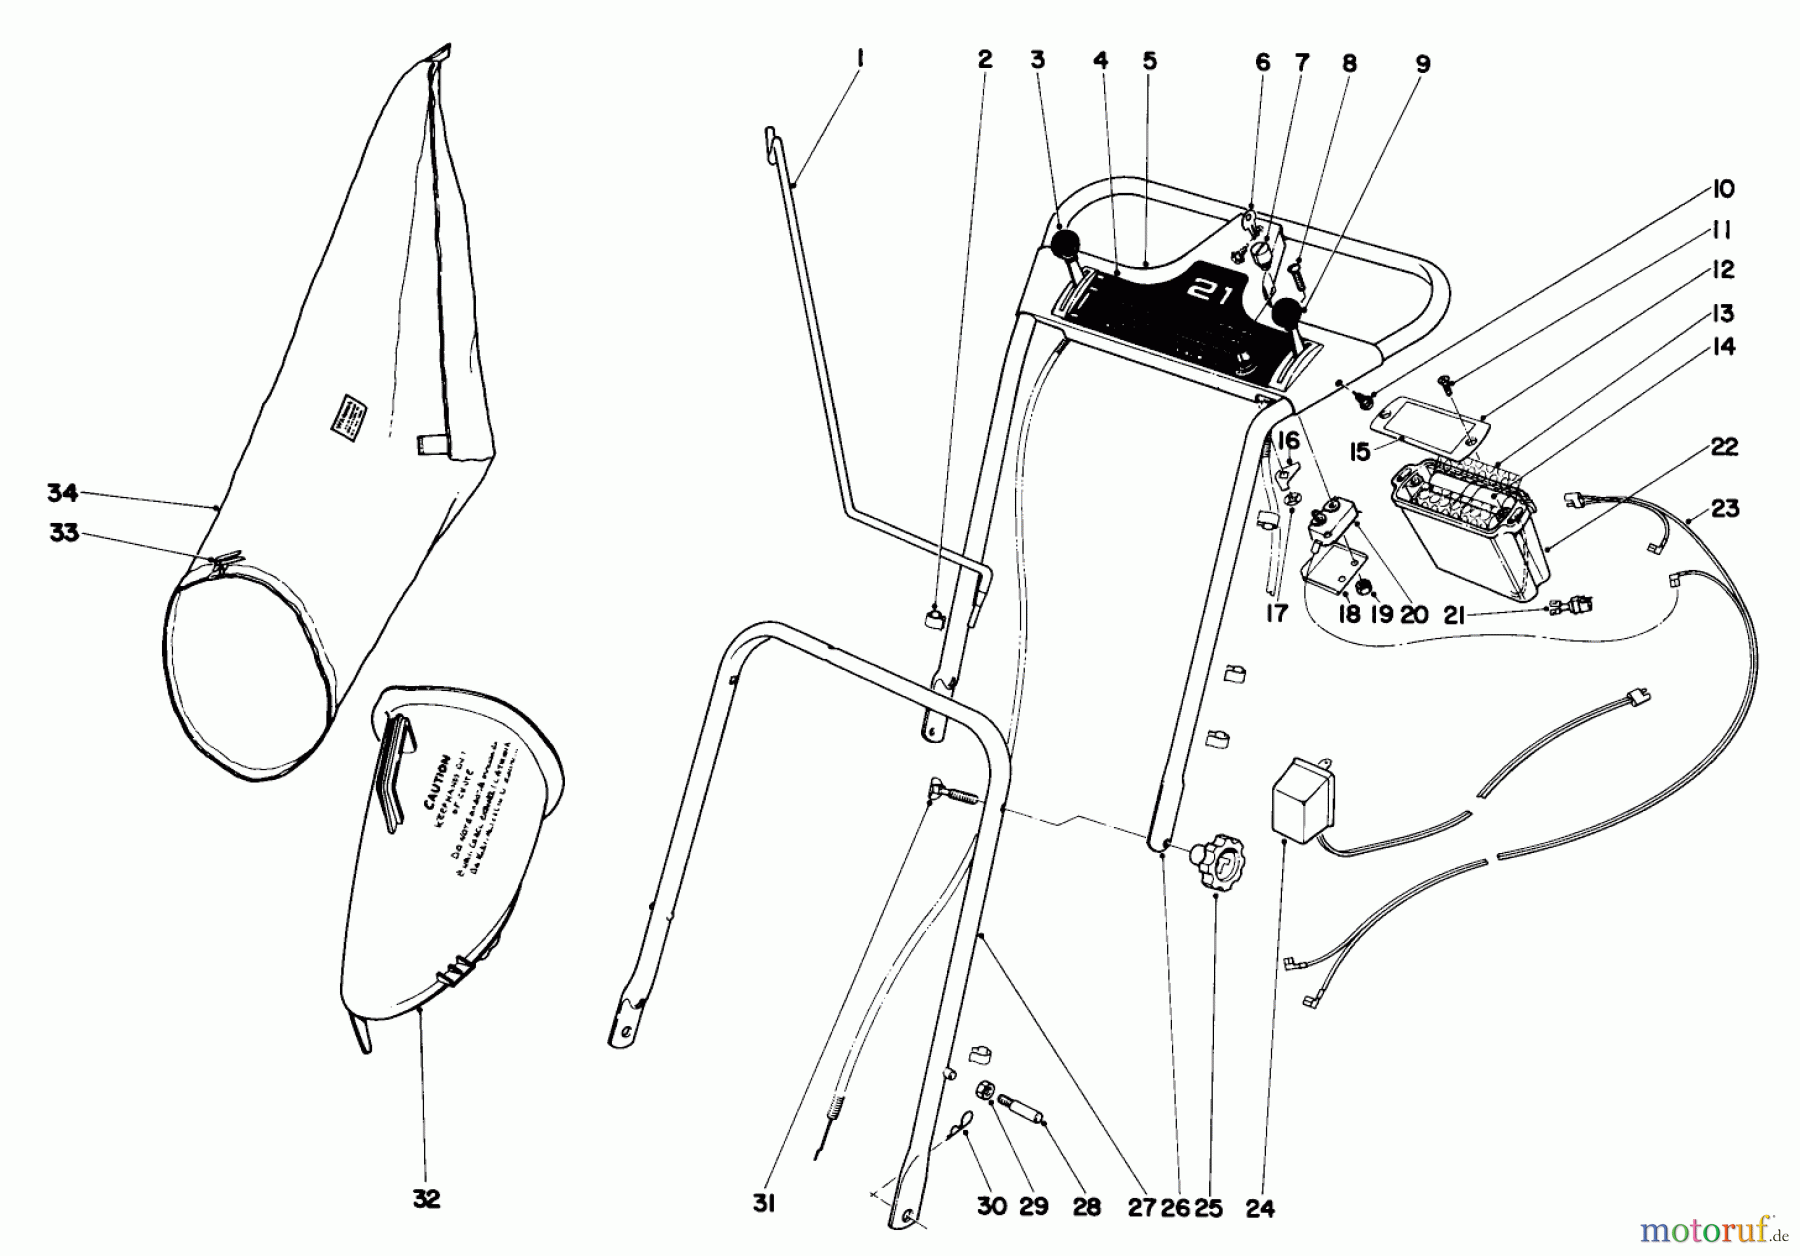  Toro Neu Mowers, Walk-Behind Seite 2 21172 - Toro Guardian Lawnmower, 1972 (2000001-2999999) HANDLE ASSEMBLY